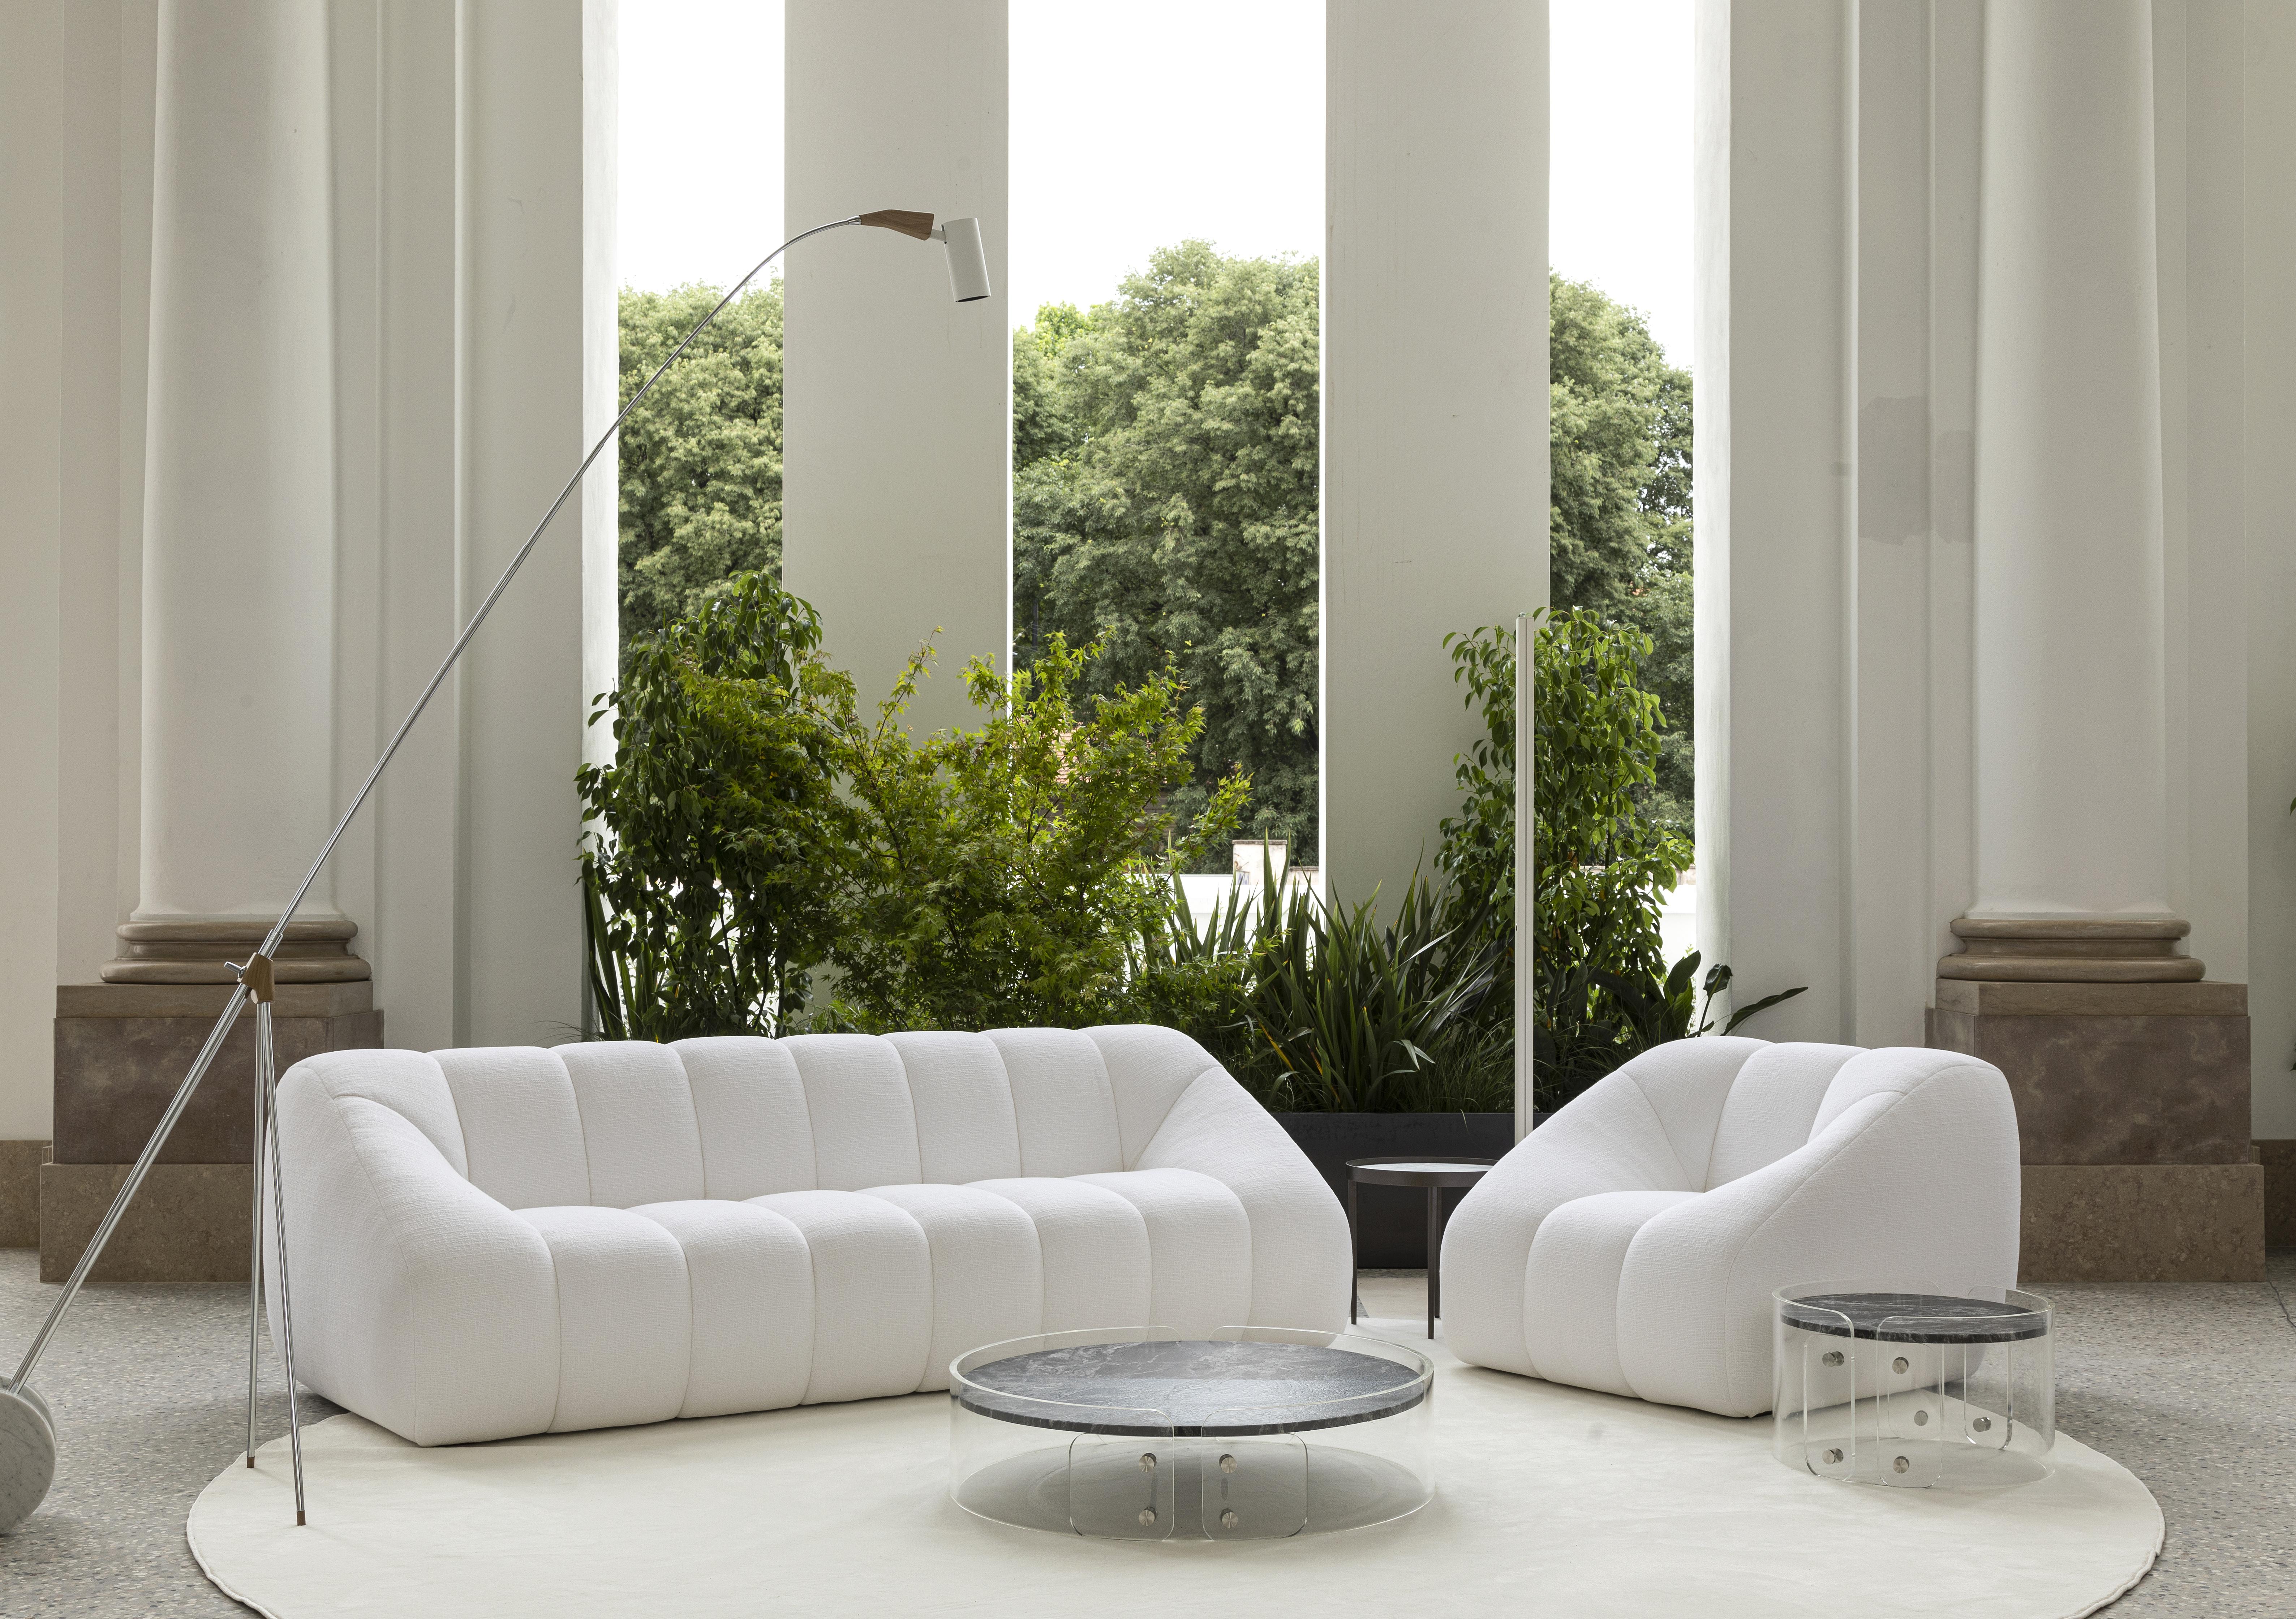 Der Sessel Di Nuovo nimmt die charakteristischen Linien des Designs der 1970er Jahre auf; er hat eine üppige und großzügige Form, mit einer breiten Sitzfläche und einer hohen Rückenlehne.
Der italienische Name steht für das, was dieses Möbel für den